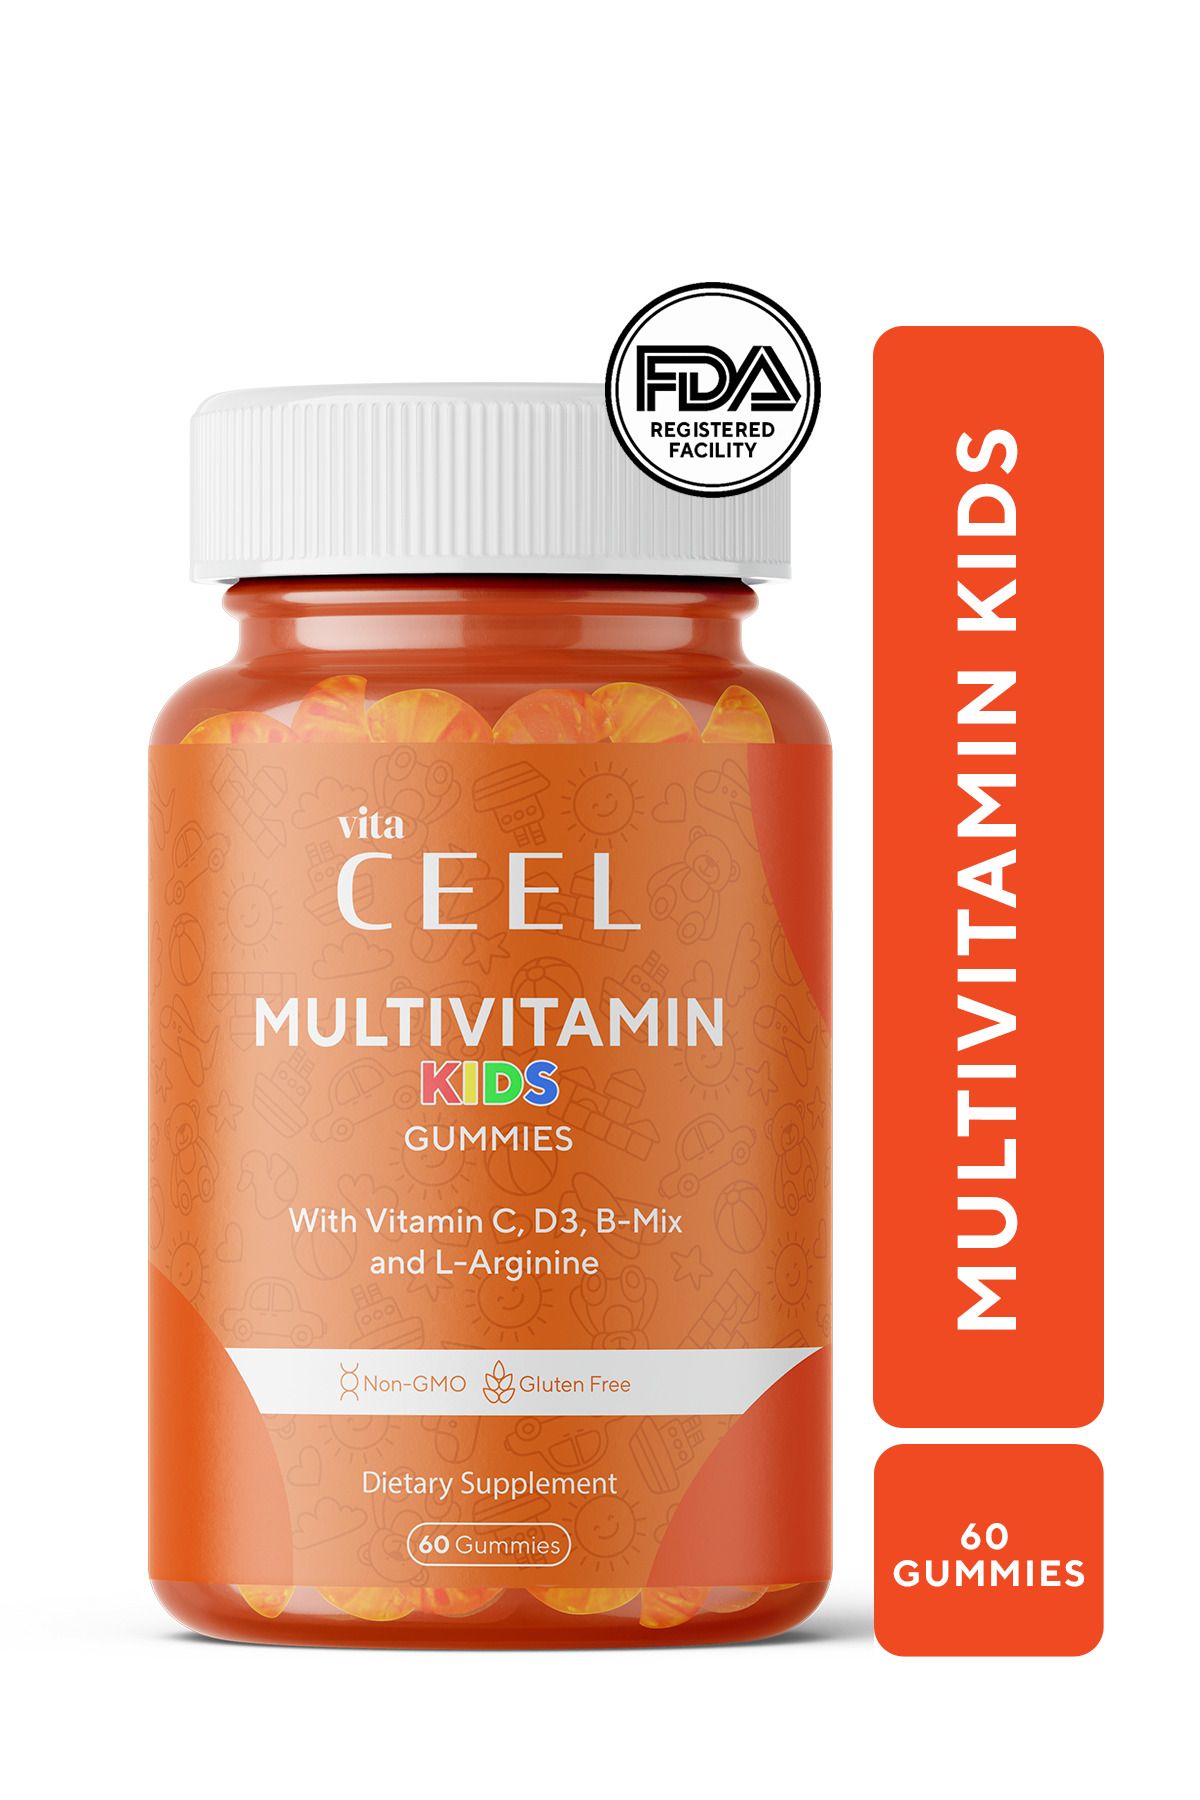 Vita Ceel Çocuklar için Gelişme Çağı Multivitamini Vitamin C, D, B Mix, L-arginine